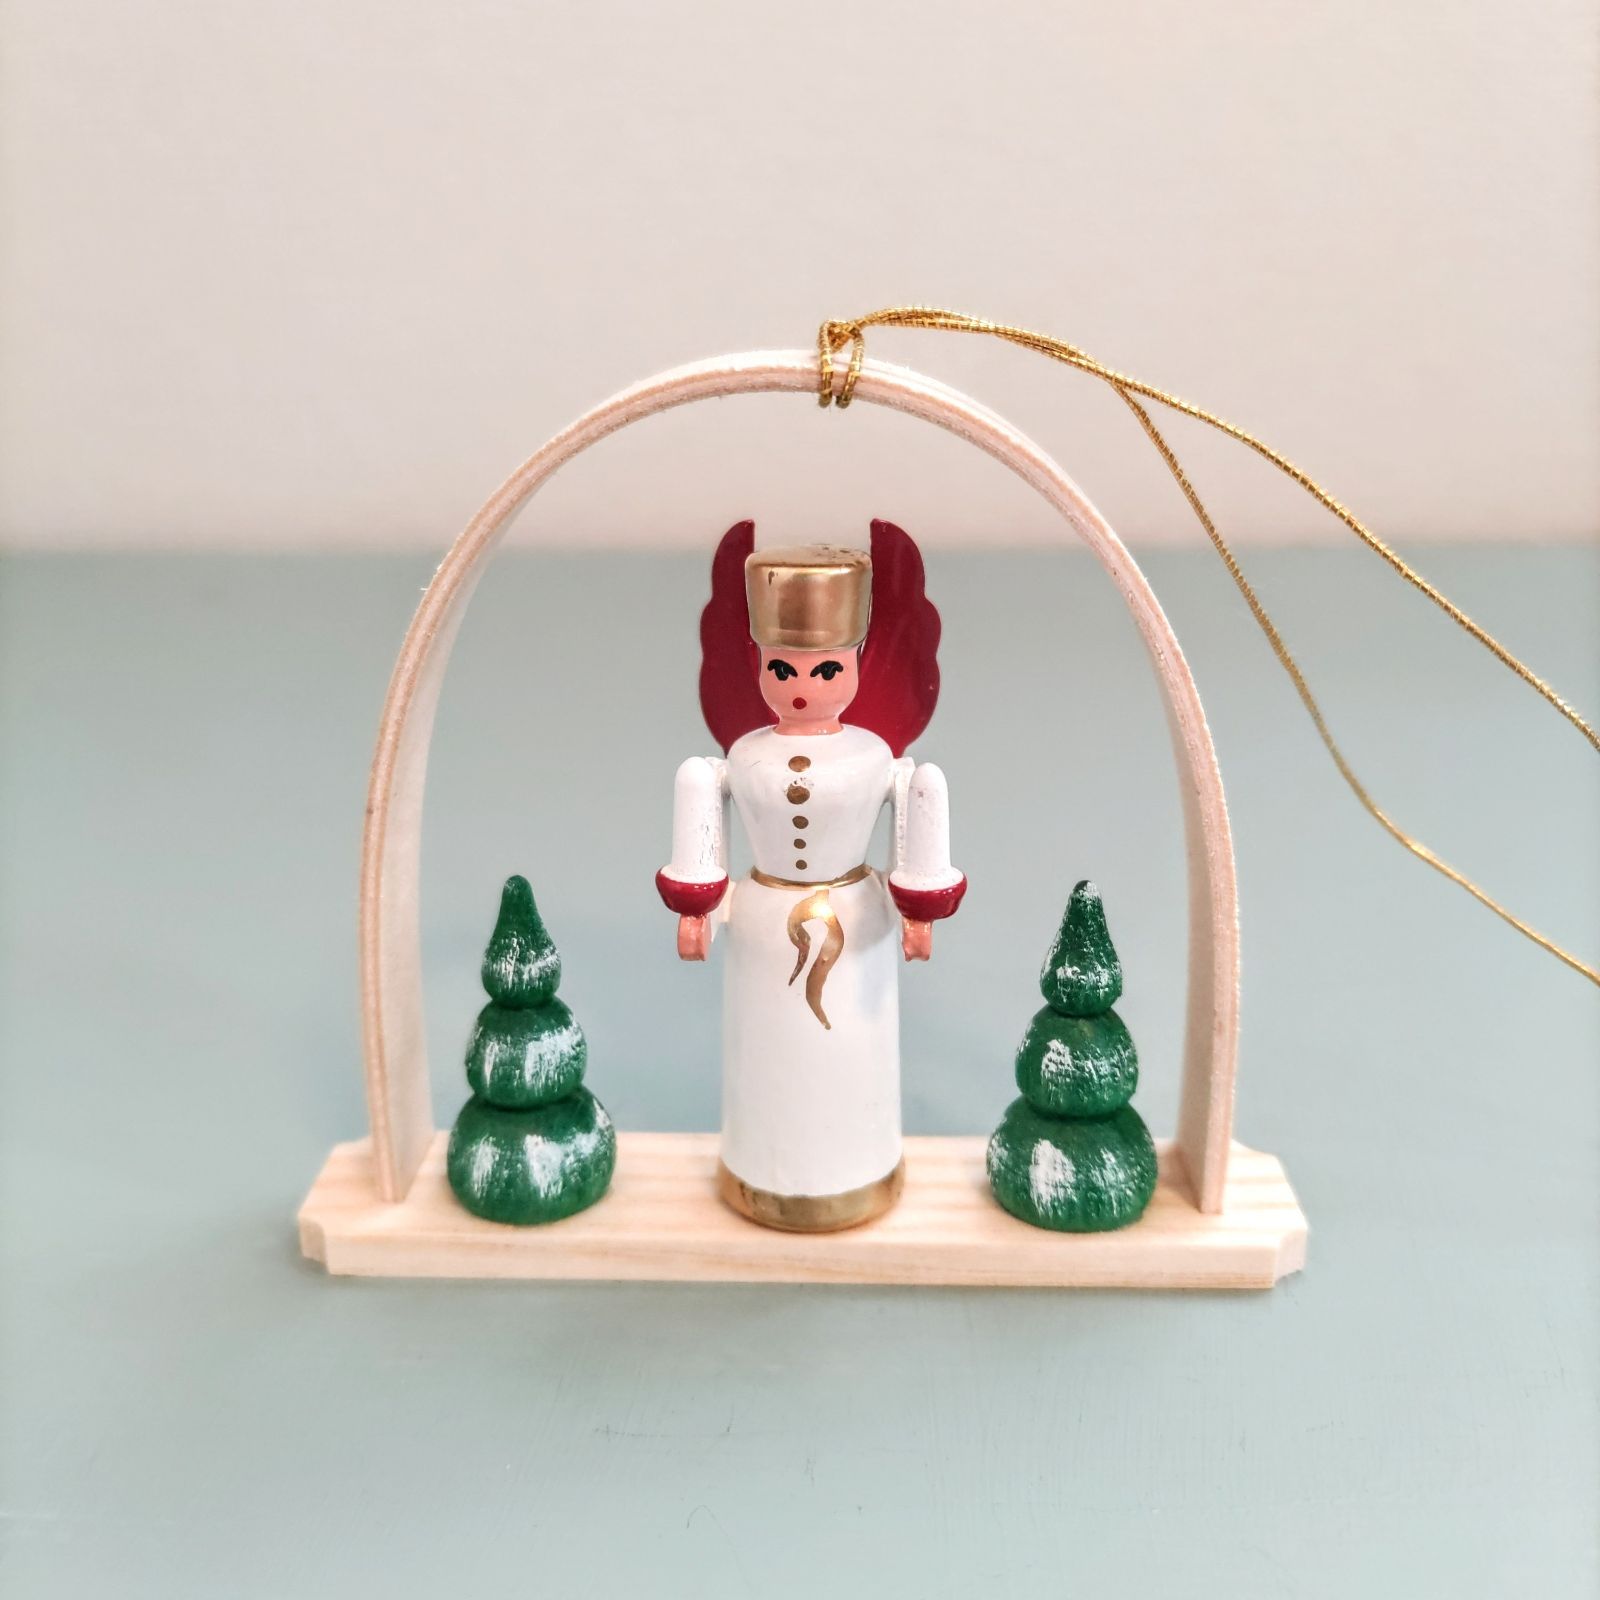 ドイツ クリスマスツリー 木製 天使 エンジェル ヴァルトファブリック 